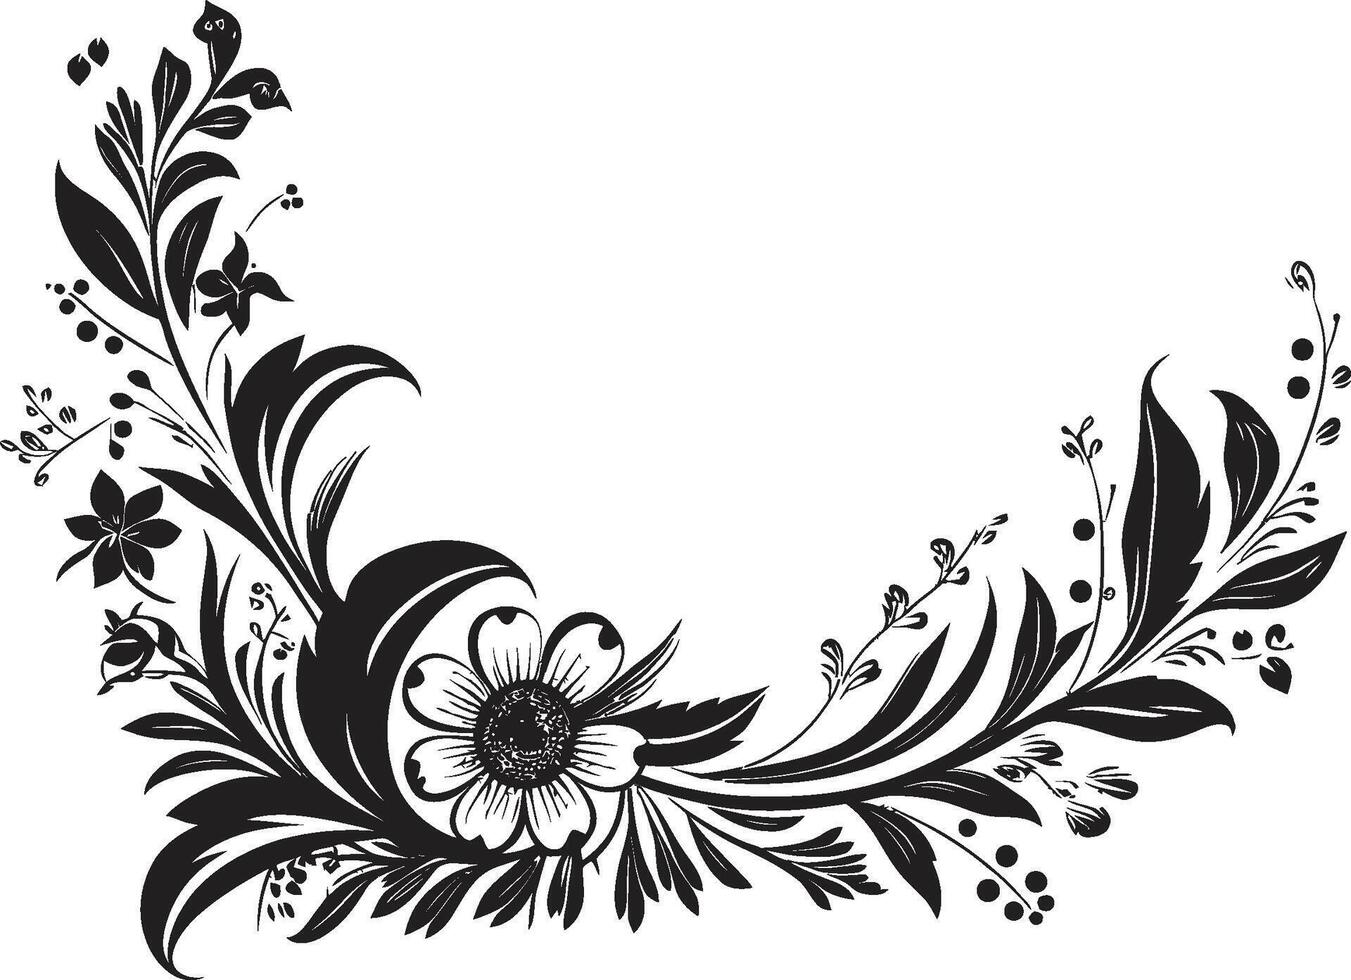 intricato inchiostri elegante vettore icona con nero scarabocchio decorativo elemento fantasioso fiorisce elegante emblema evidenziazione decorativo scarabocchi